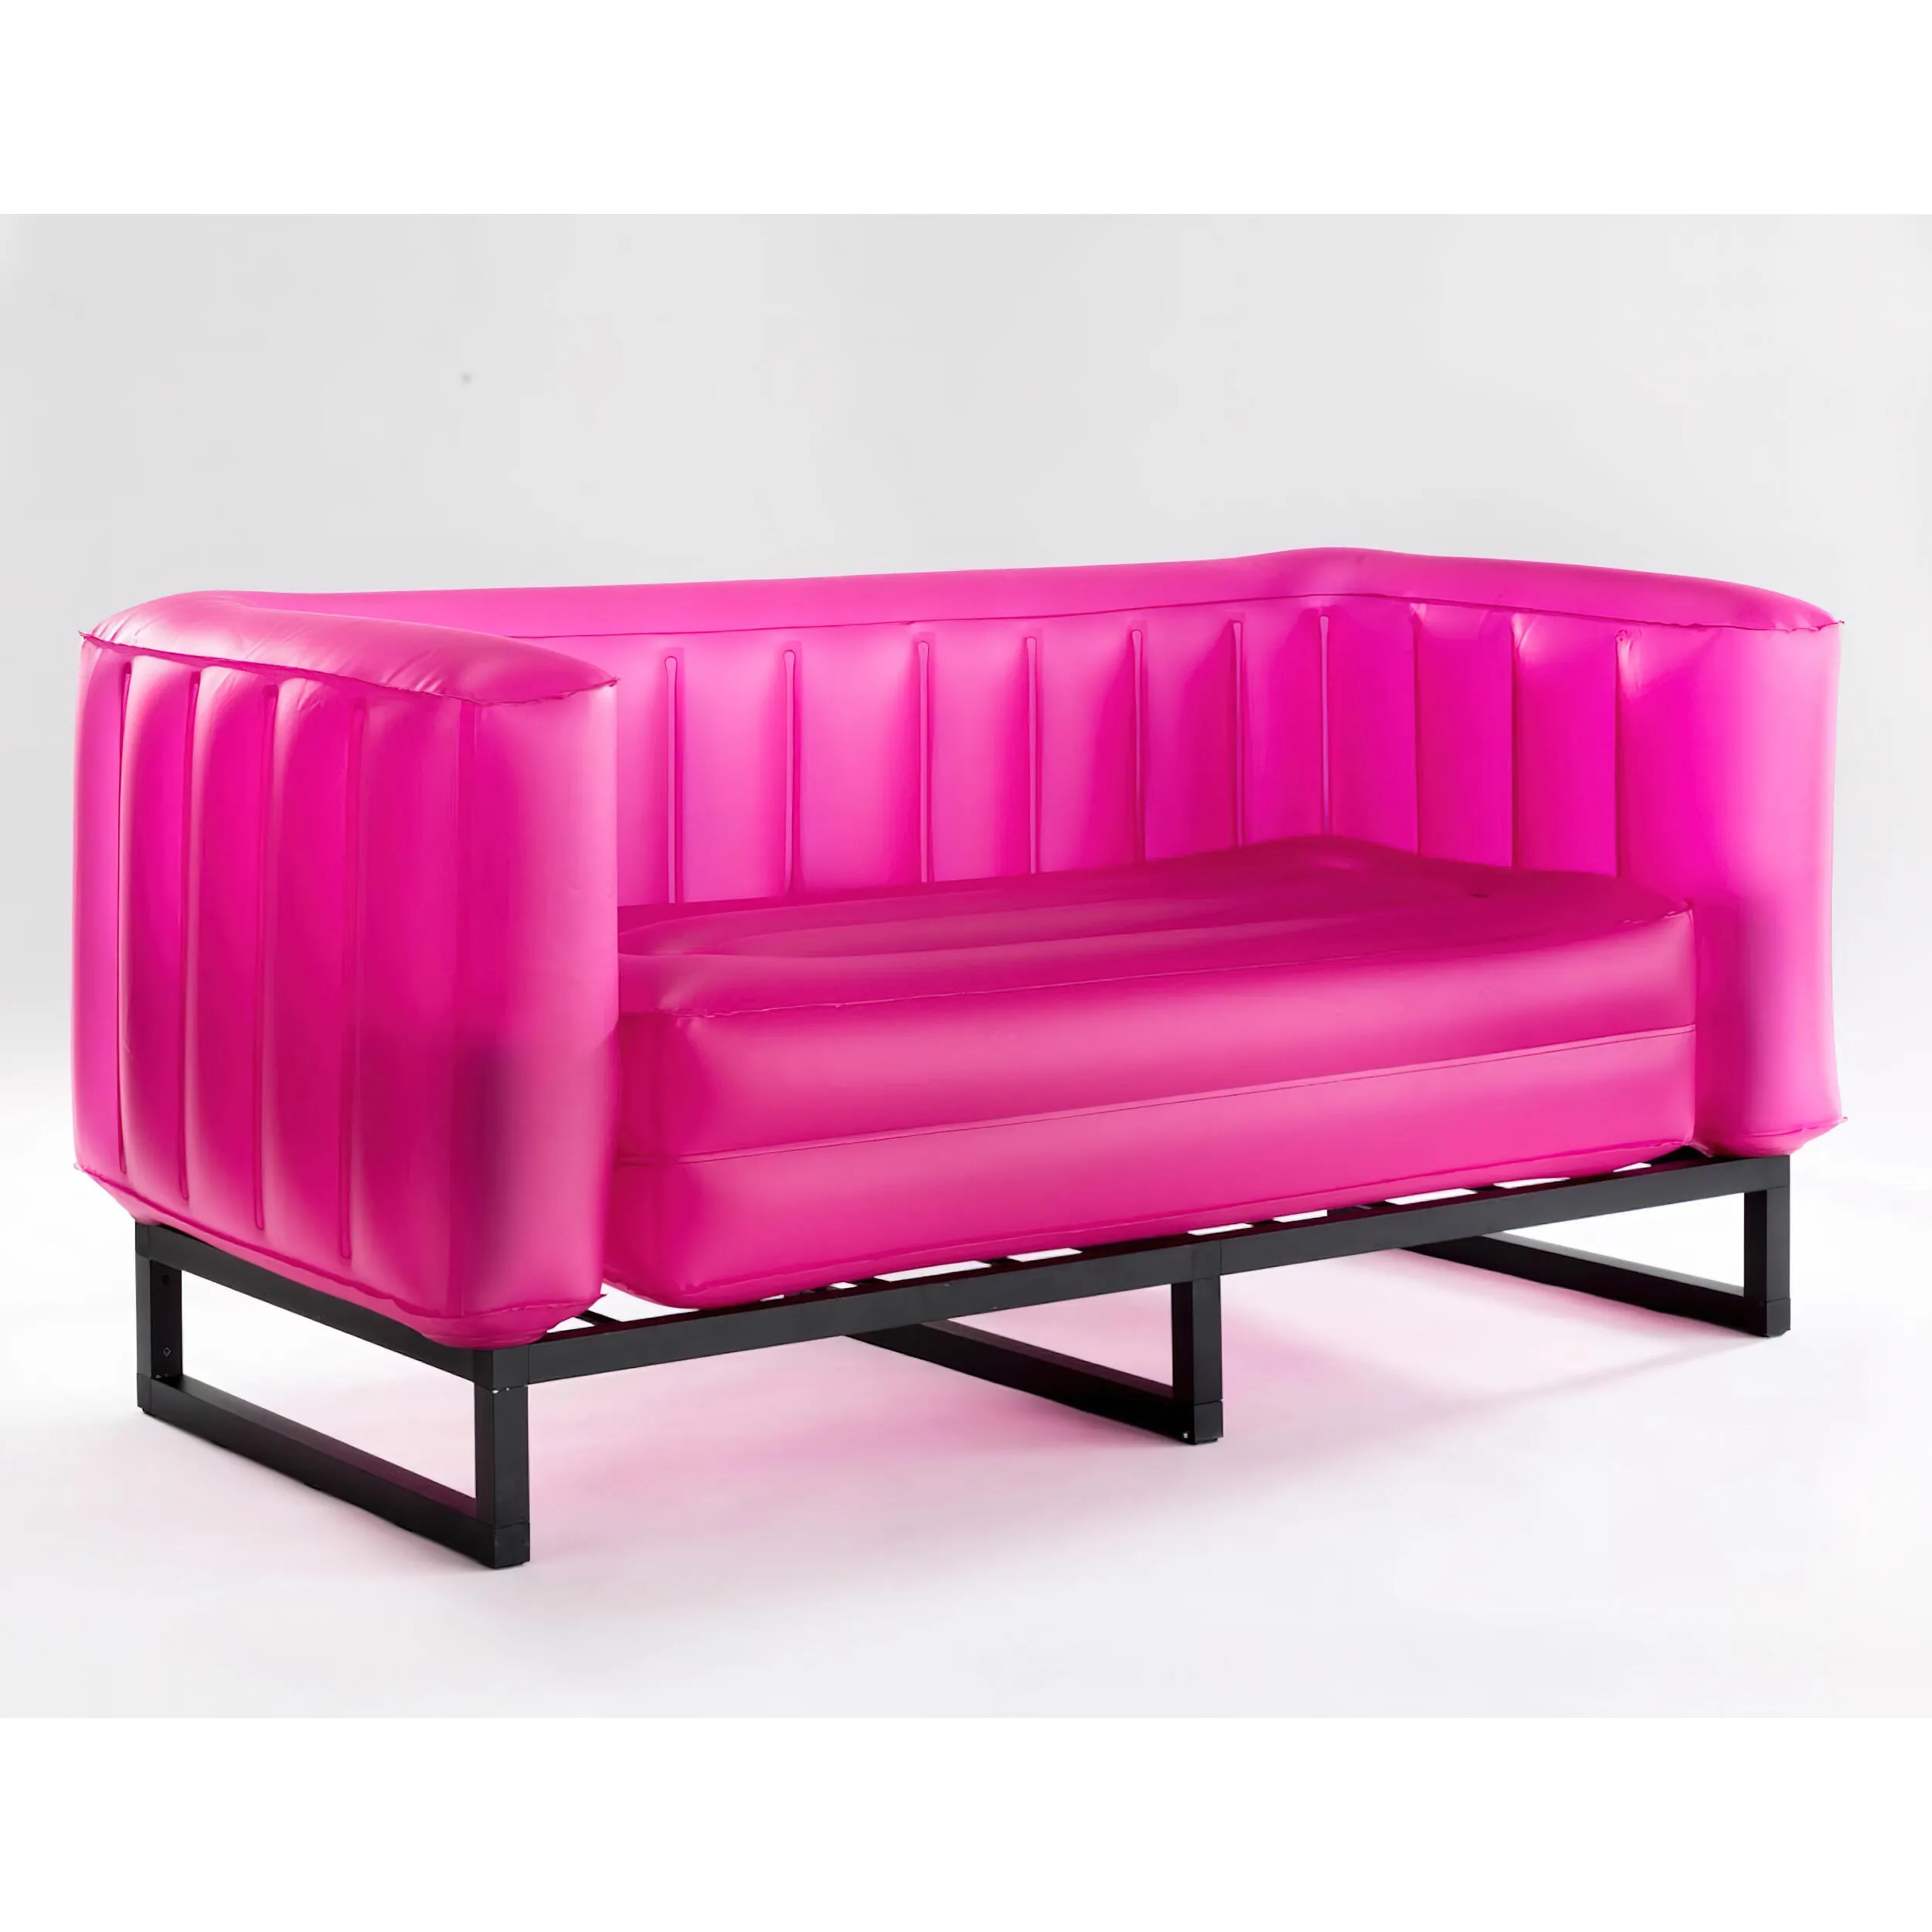 divano Yomi eko illuminato struttura in alluminio, dimensioni 76x151xH69 cm peso 14,6 kg, seduta gonfiabile in TPU colore rosa traslucido